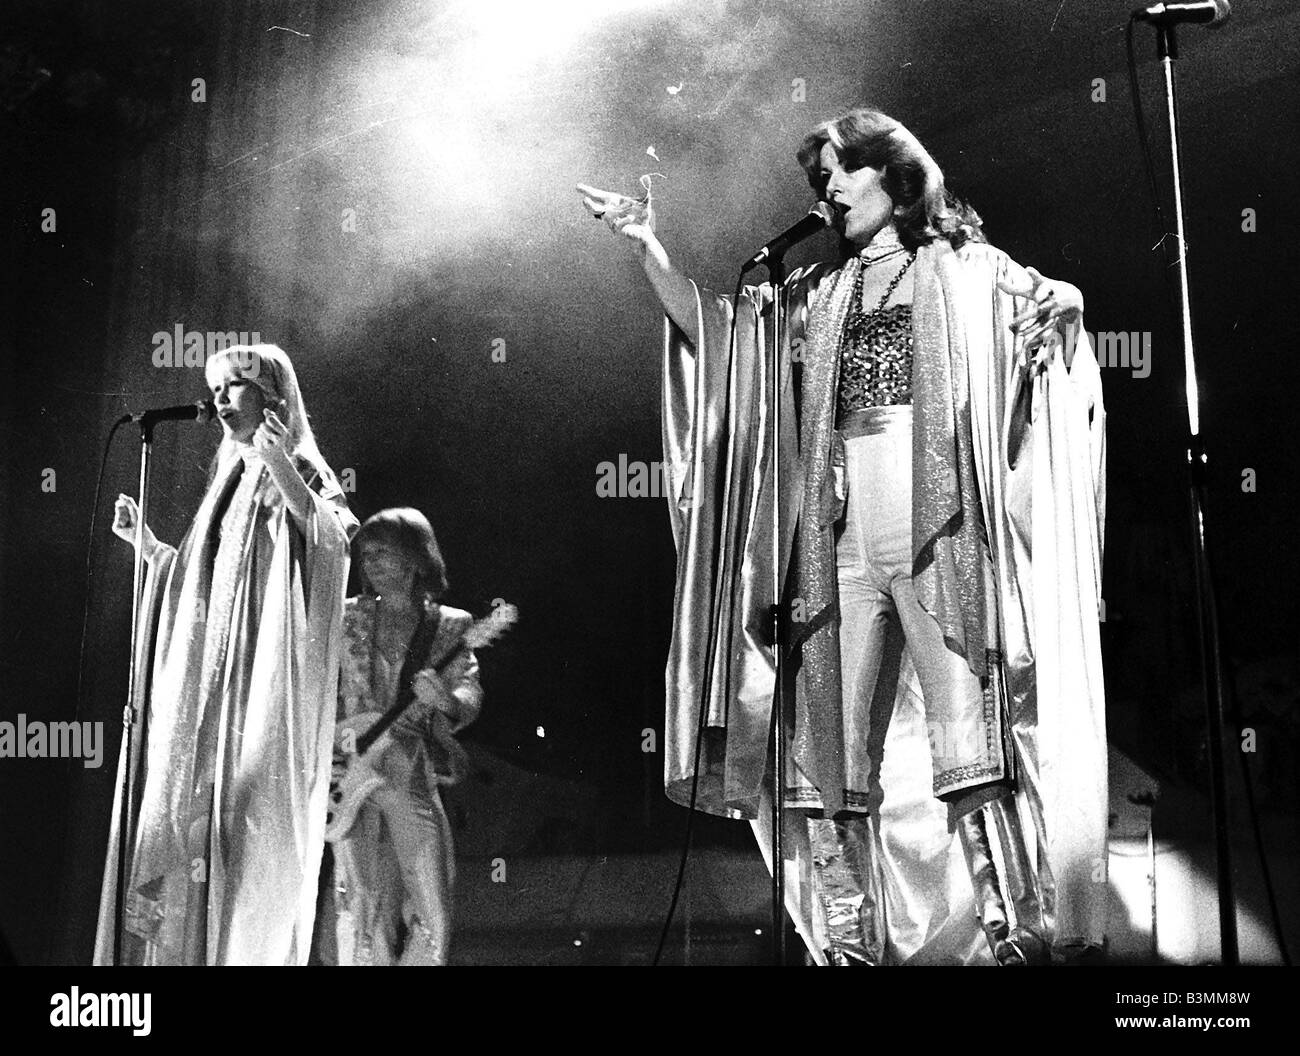 Abba cantar en el escenario en febrero de 1977 Foto de stock